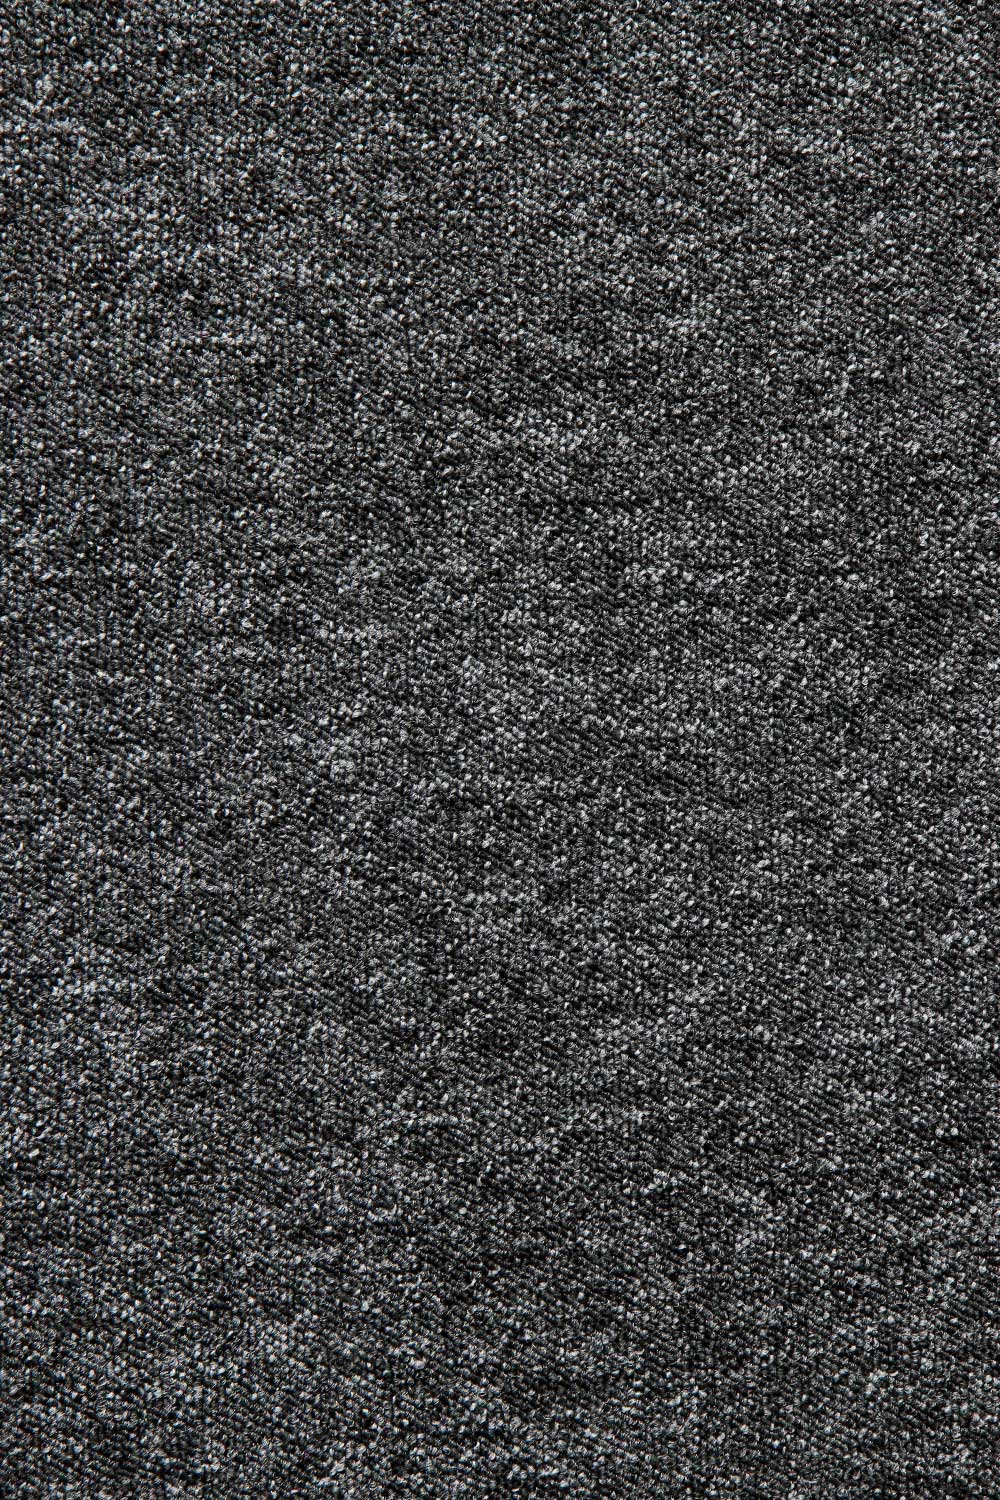 Metrážny koberec Lyon Solid 77 500 cm